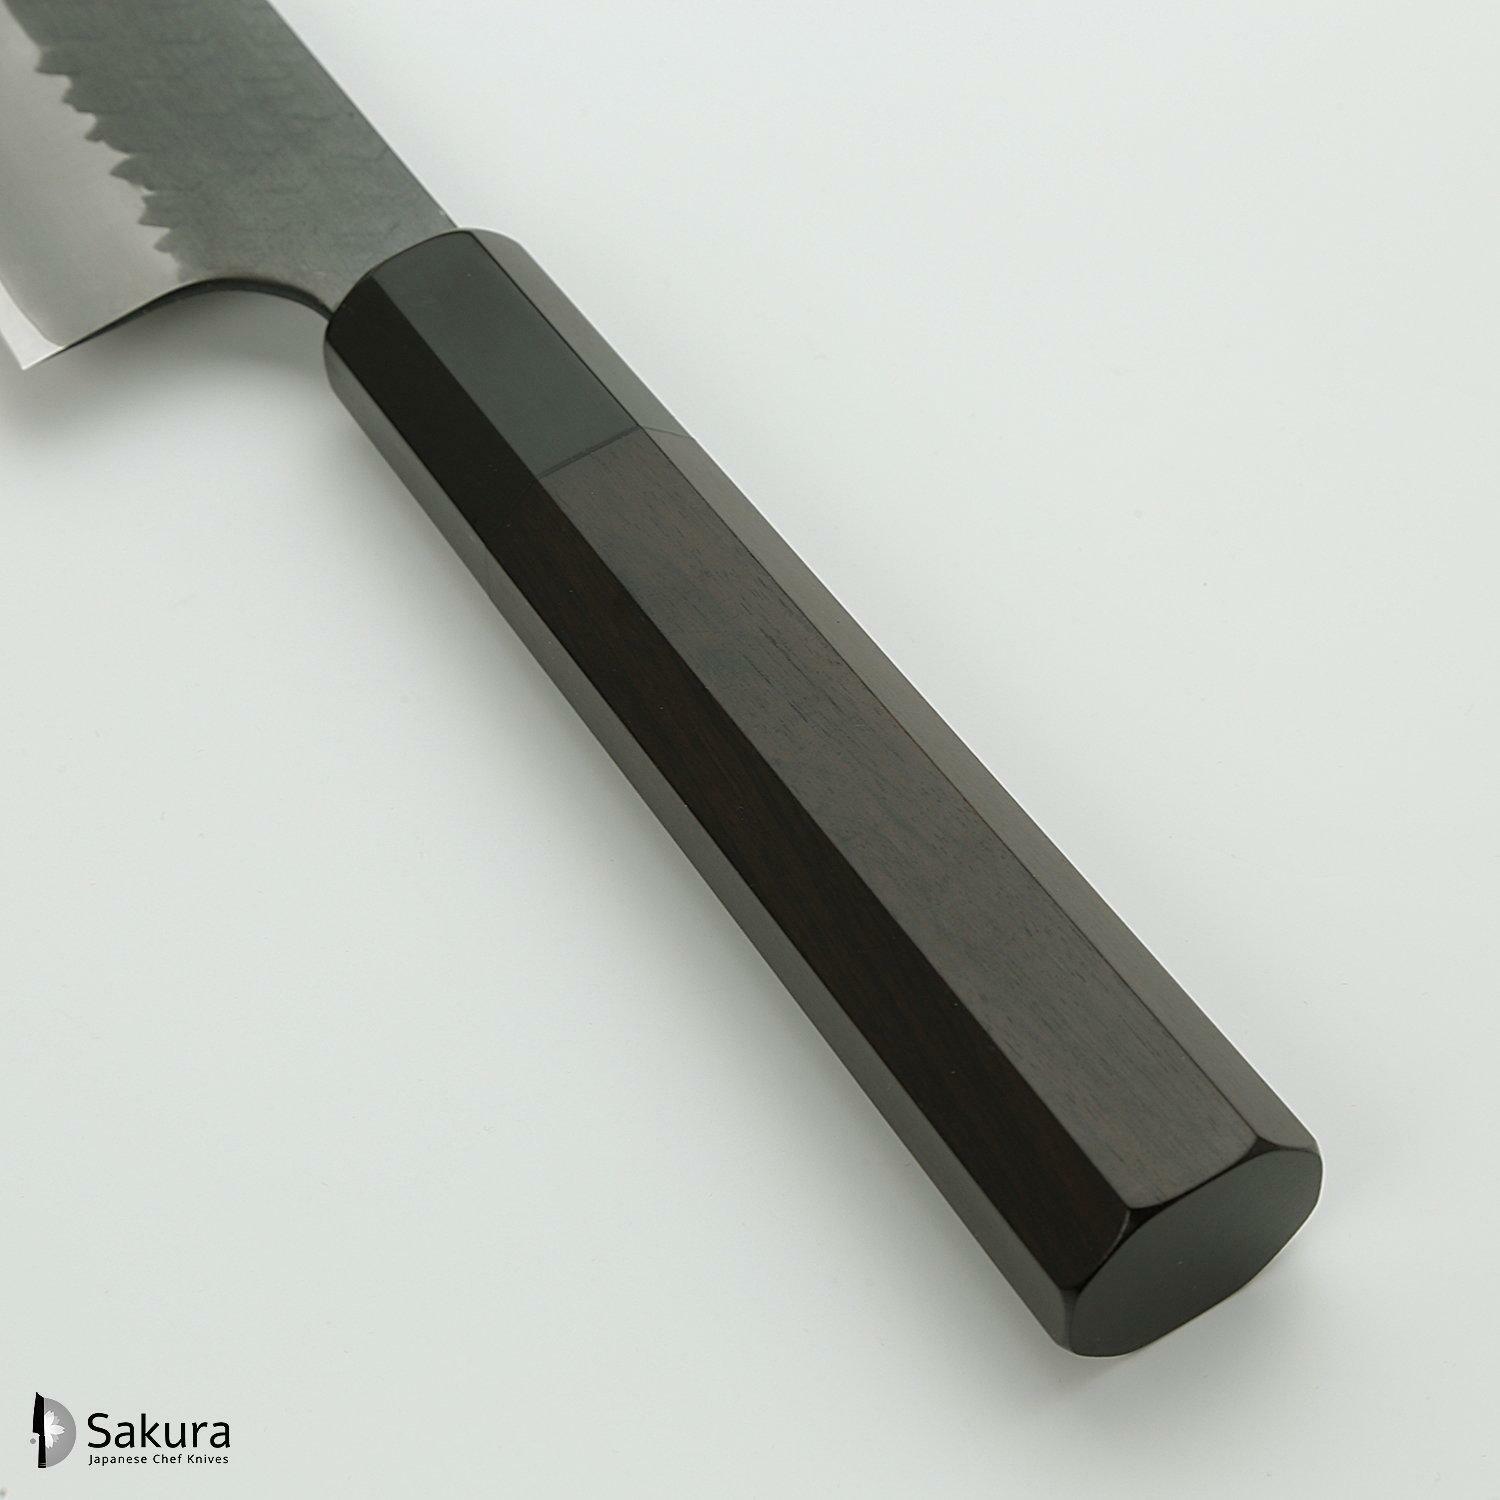 סכין שף רב-תכליתית גִּיוּטוֹ 210מ״מ מחושלת בעבודת יד 3 שכבות: פלדת פחמן יפנית מתקדמת מסוג R2/SG2 עטופה פלדת אל-חלד גימור קורואיצ׳י שחור עם ריקוע פטיש ניגארה יפן